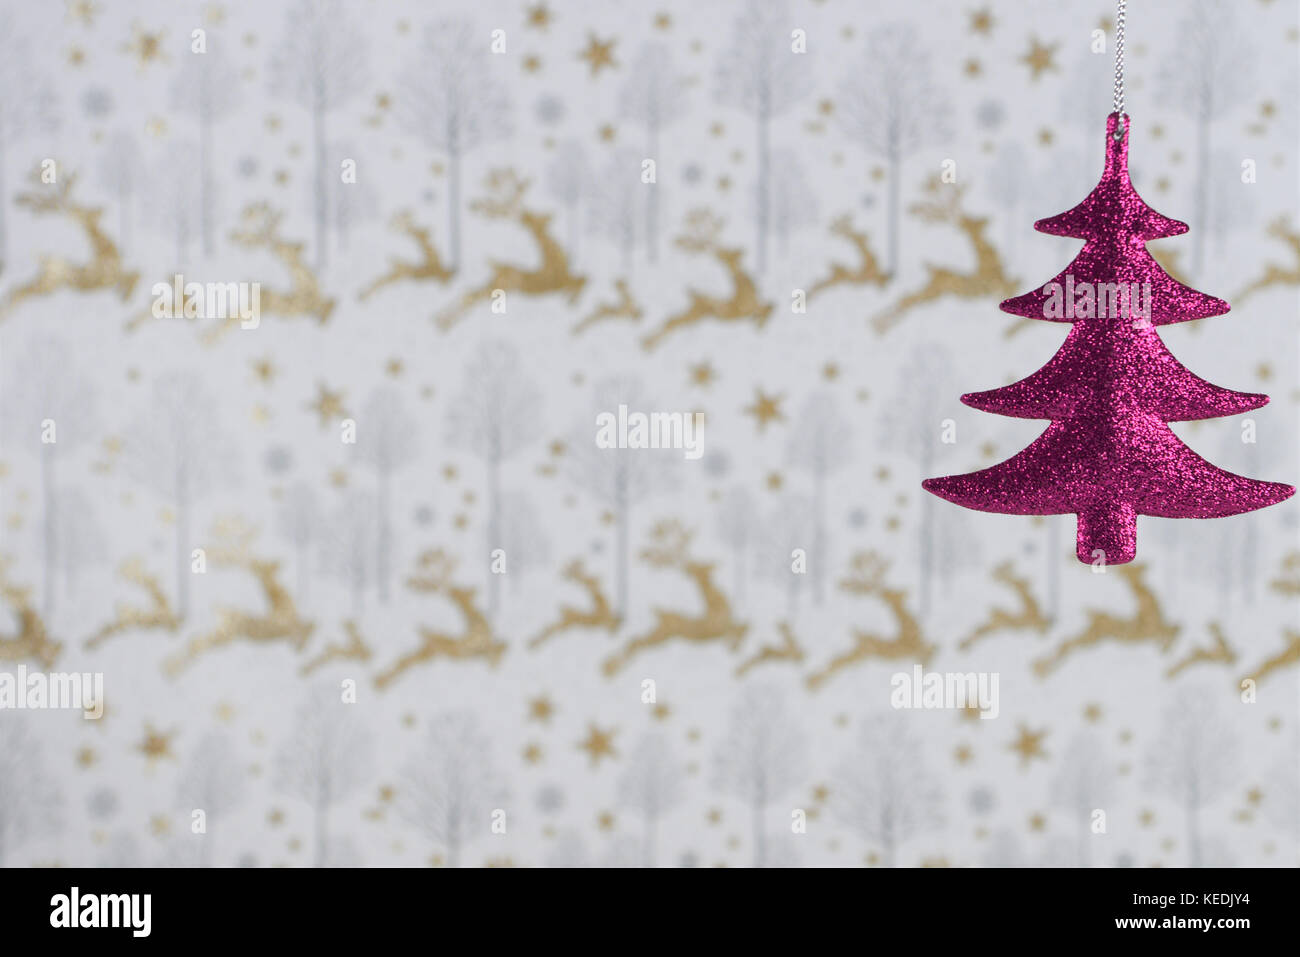 Fotografia di Natale immagine della decorazione di Natale di riagganciare di rosa glitter albero di natale con oro glitter renne xmas incarto lo sfondo della carta Foto Stock